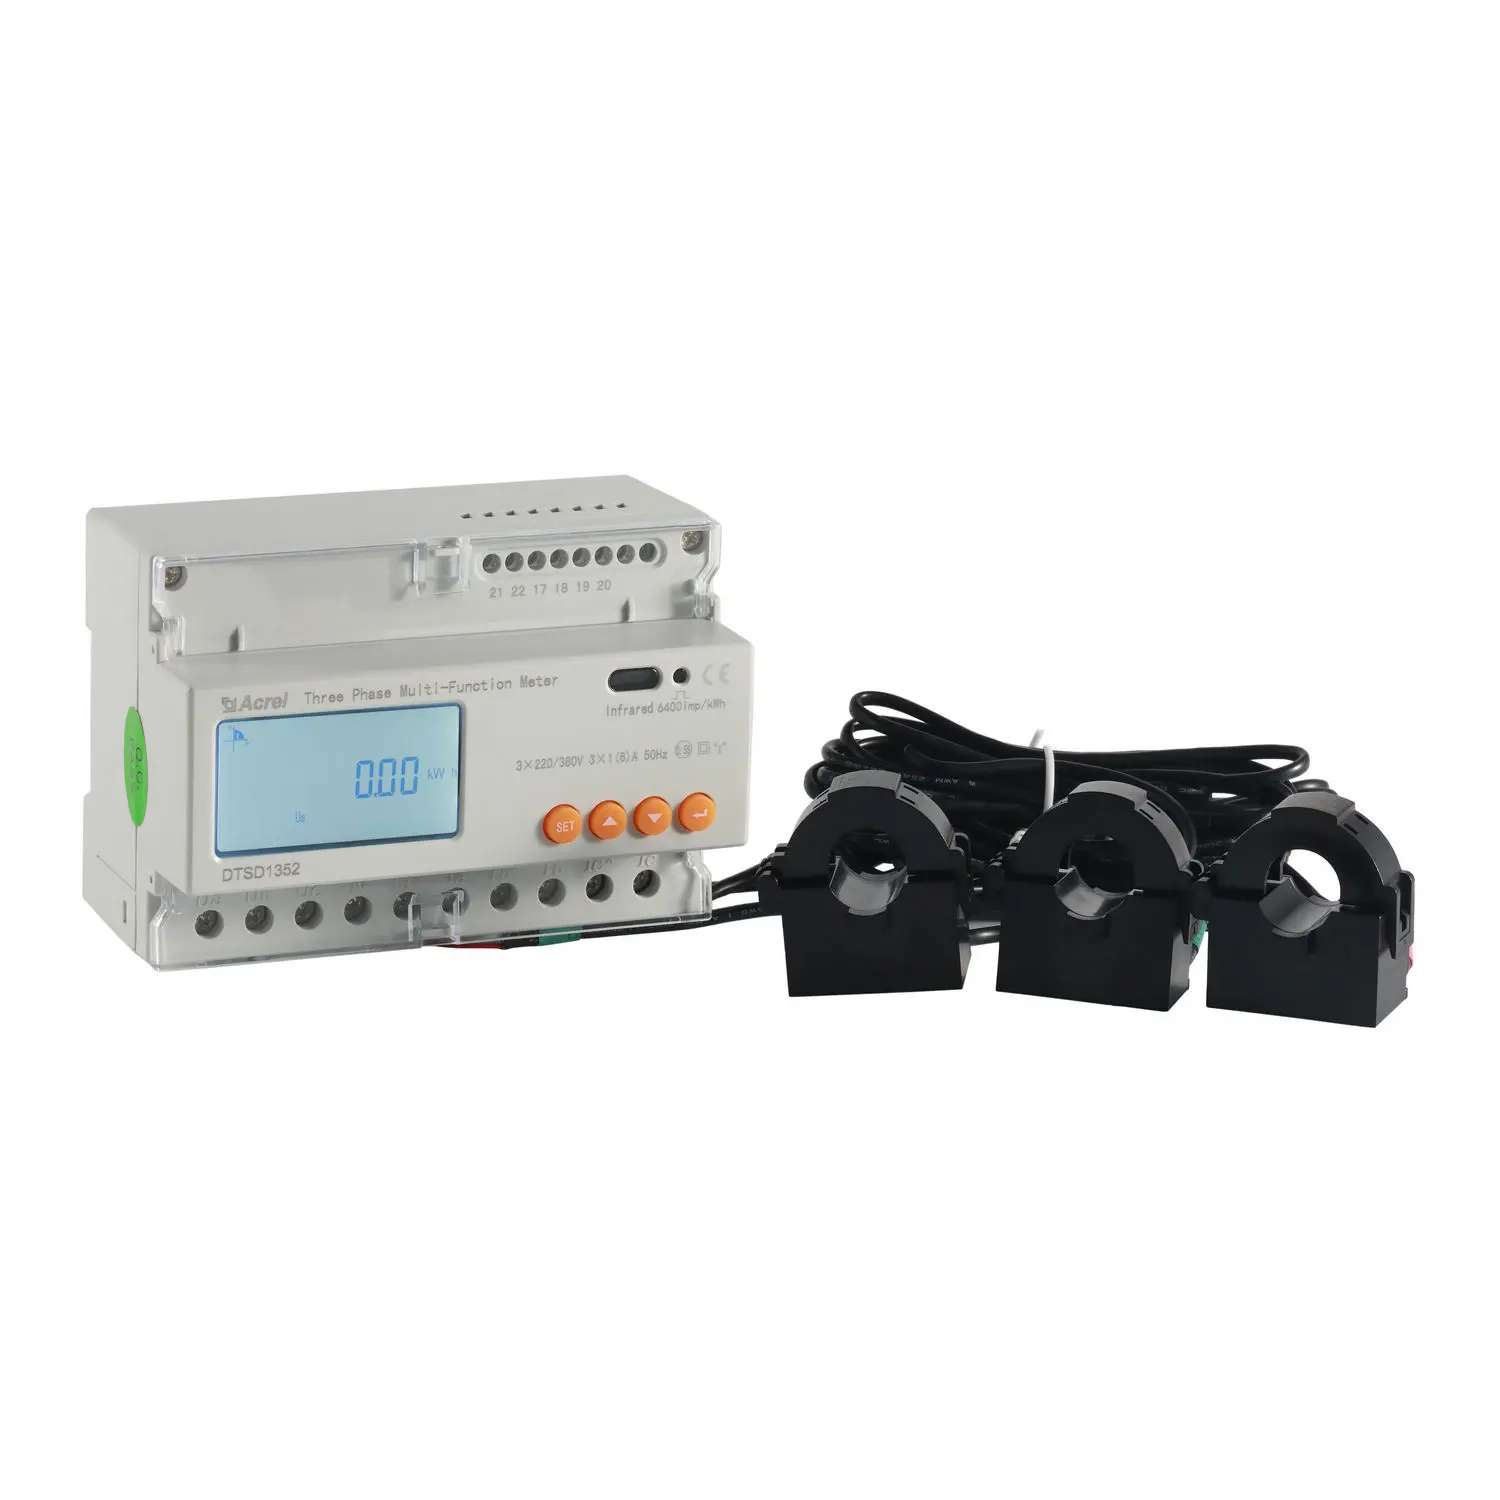 Acrel-medidor de panel solar multifuncional DTSD1352, medidor de potencia de CA con ct s y medidor de potencia de cableado con ct